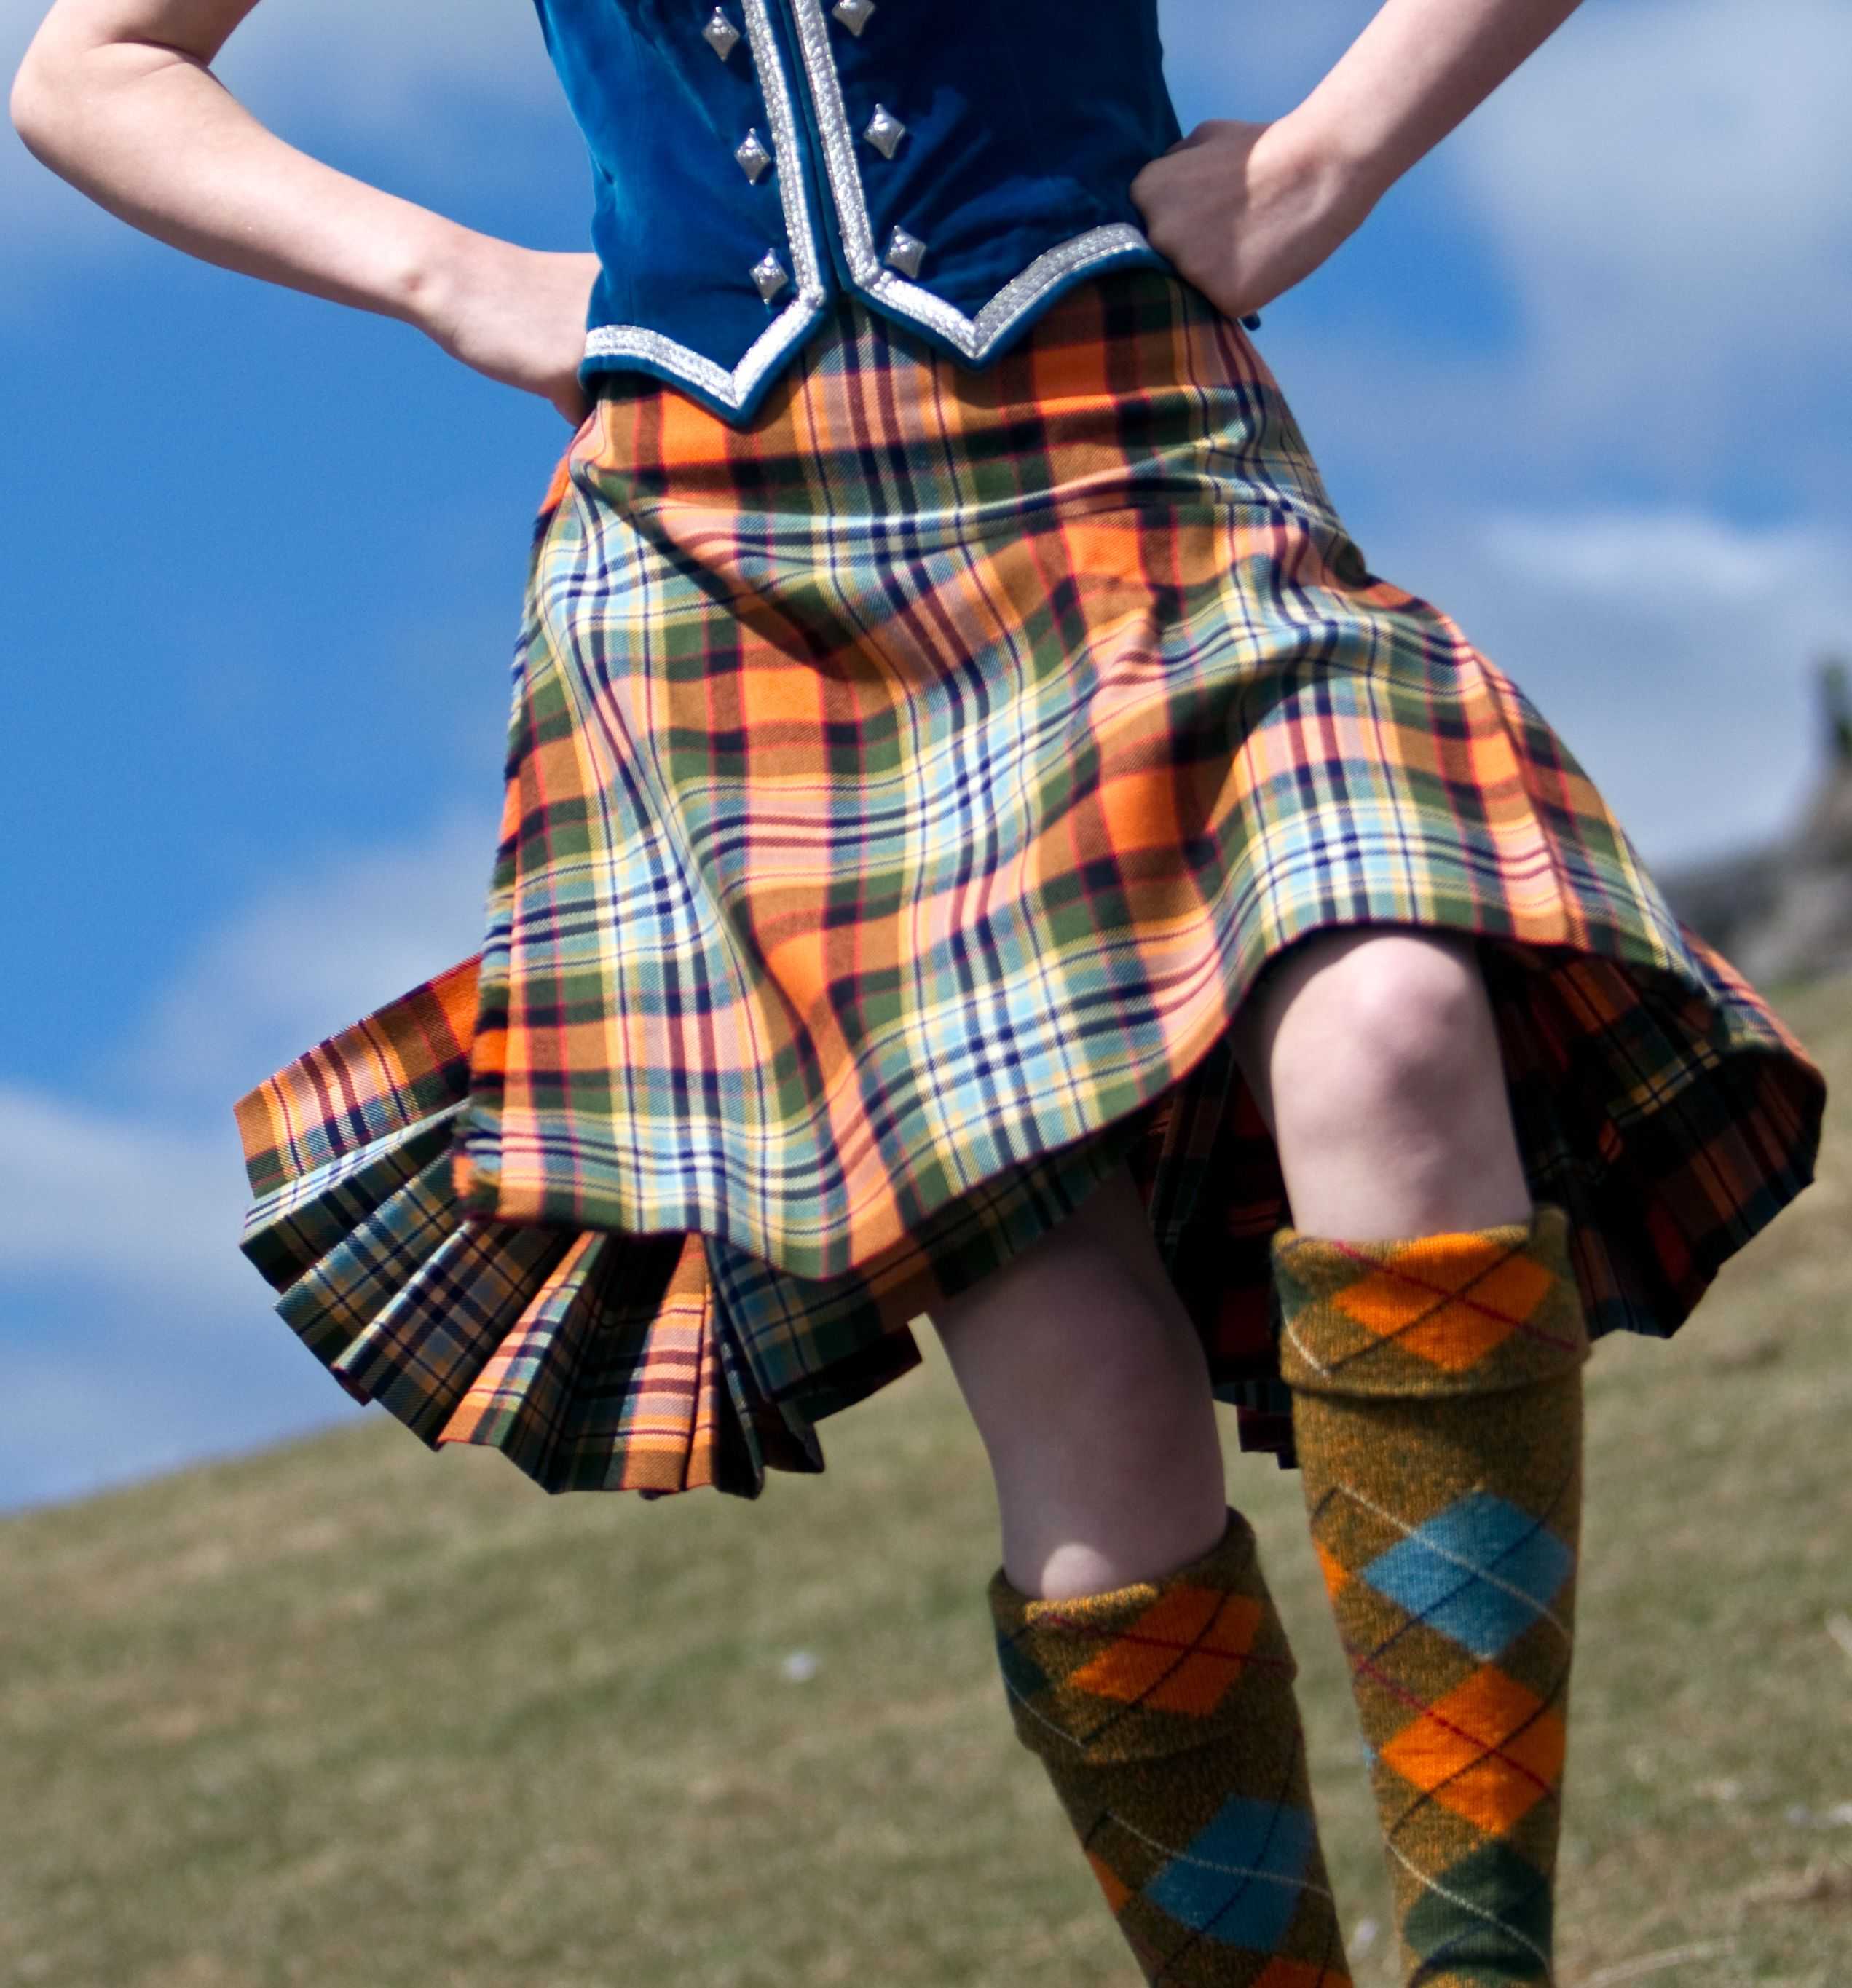 Килт. почему мужчины шотландии носят юбки